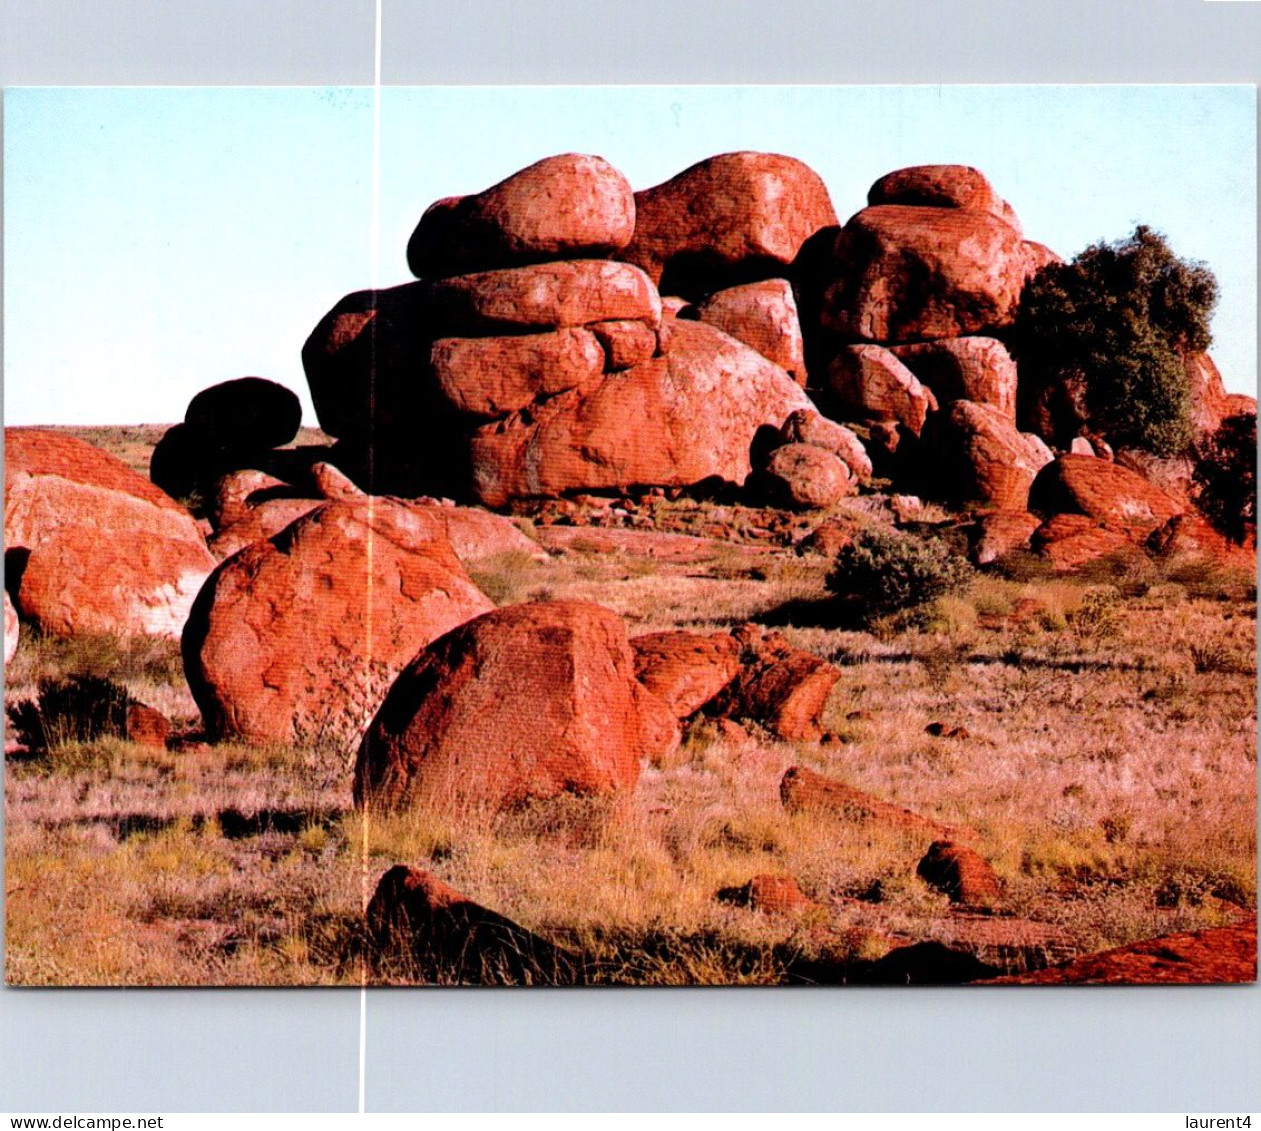 22-5-2024 (5 Z 48) Australia - NT - Devil's Marbles (2 Postcards) - Unclassified